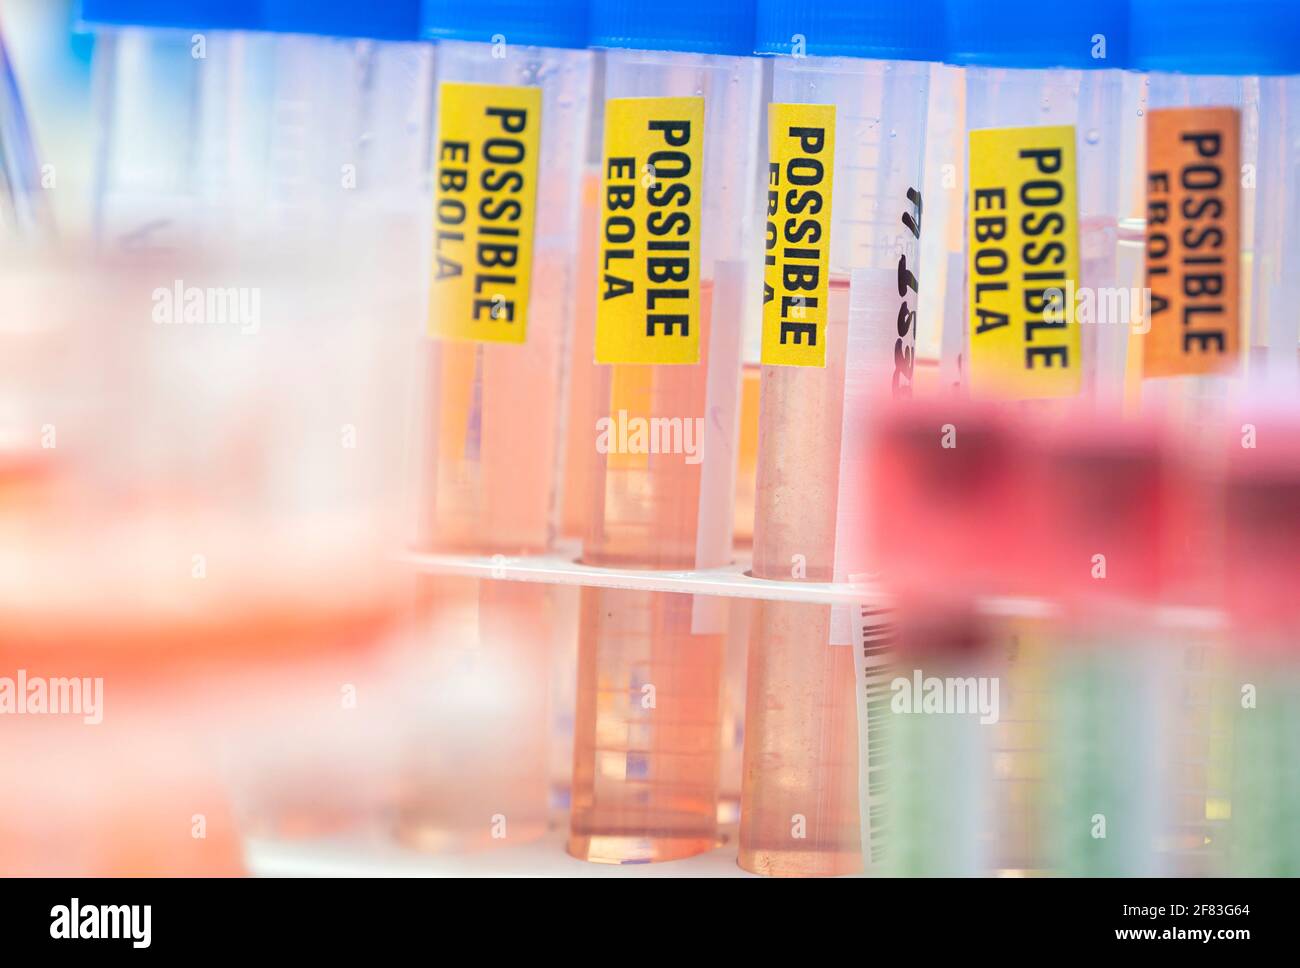 Probenfläschchen mit Blut von möglichen Ebola-Patienten, die mit dem neuen Zaire-Stamm von Ebola infiziert sind, Konzeptbild Stockfoto